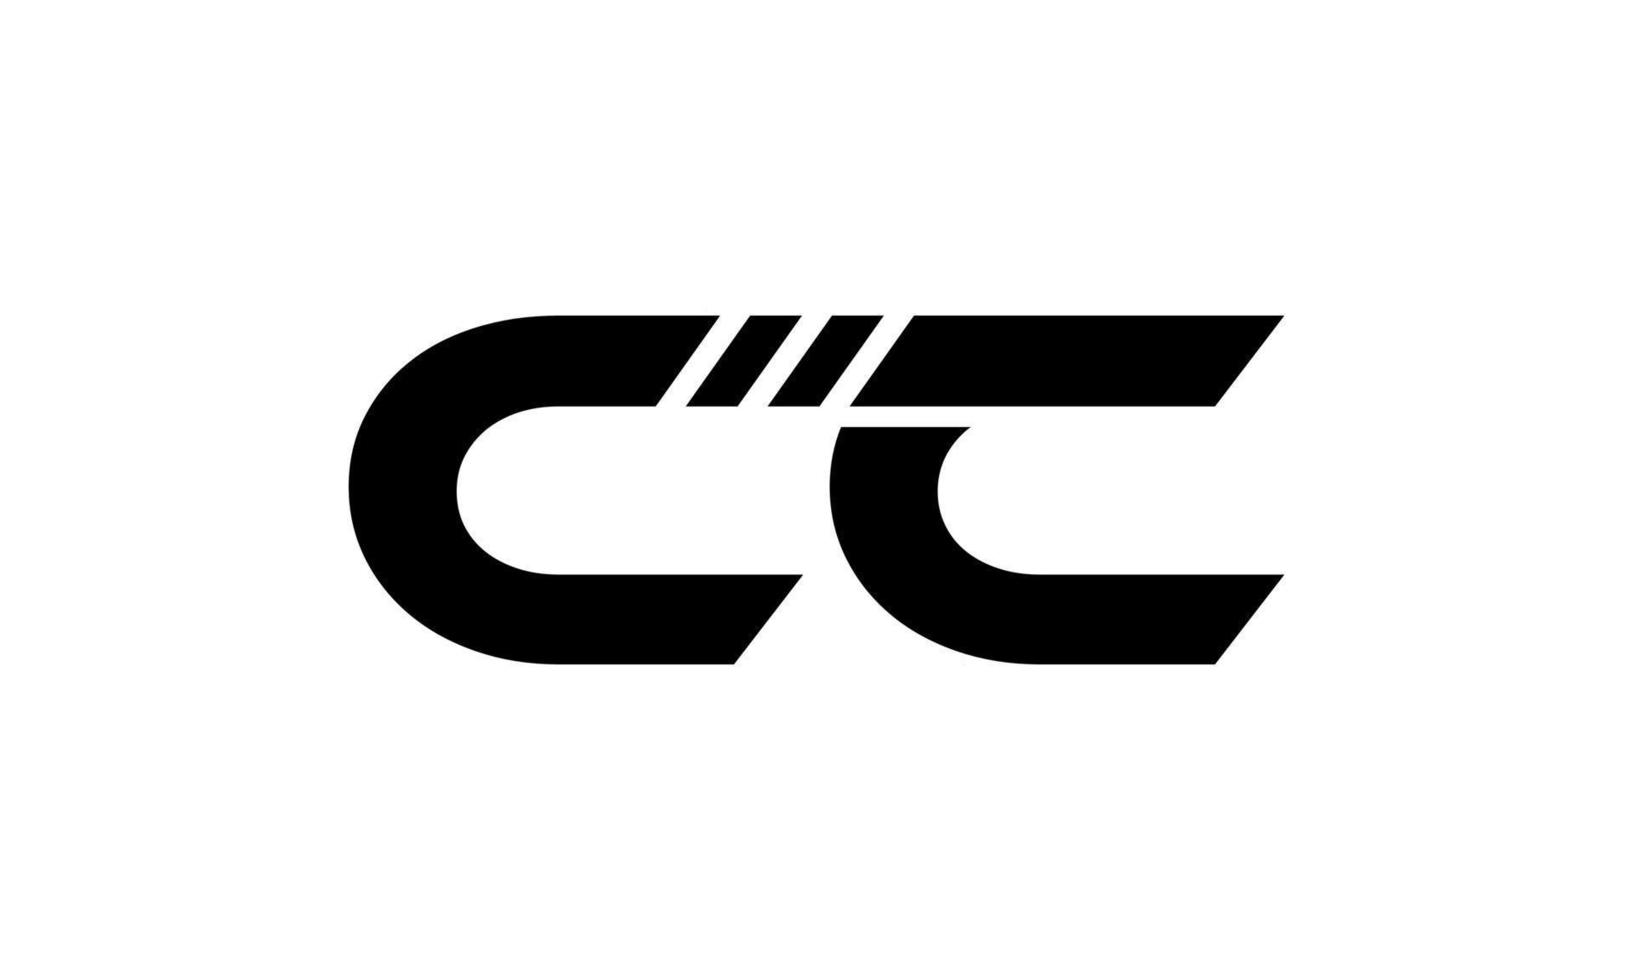 CC logo design. Initial CC letter logo design monogram vector design pro vector.